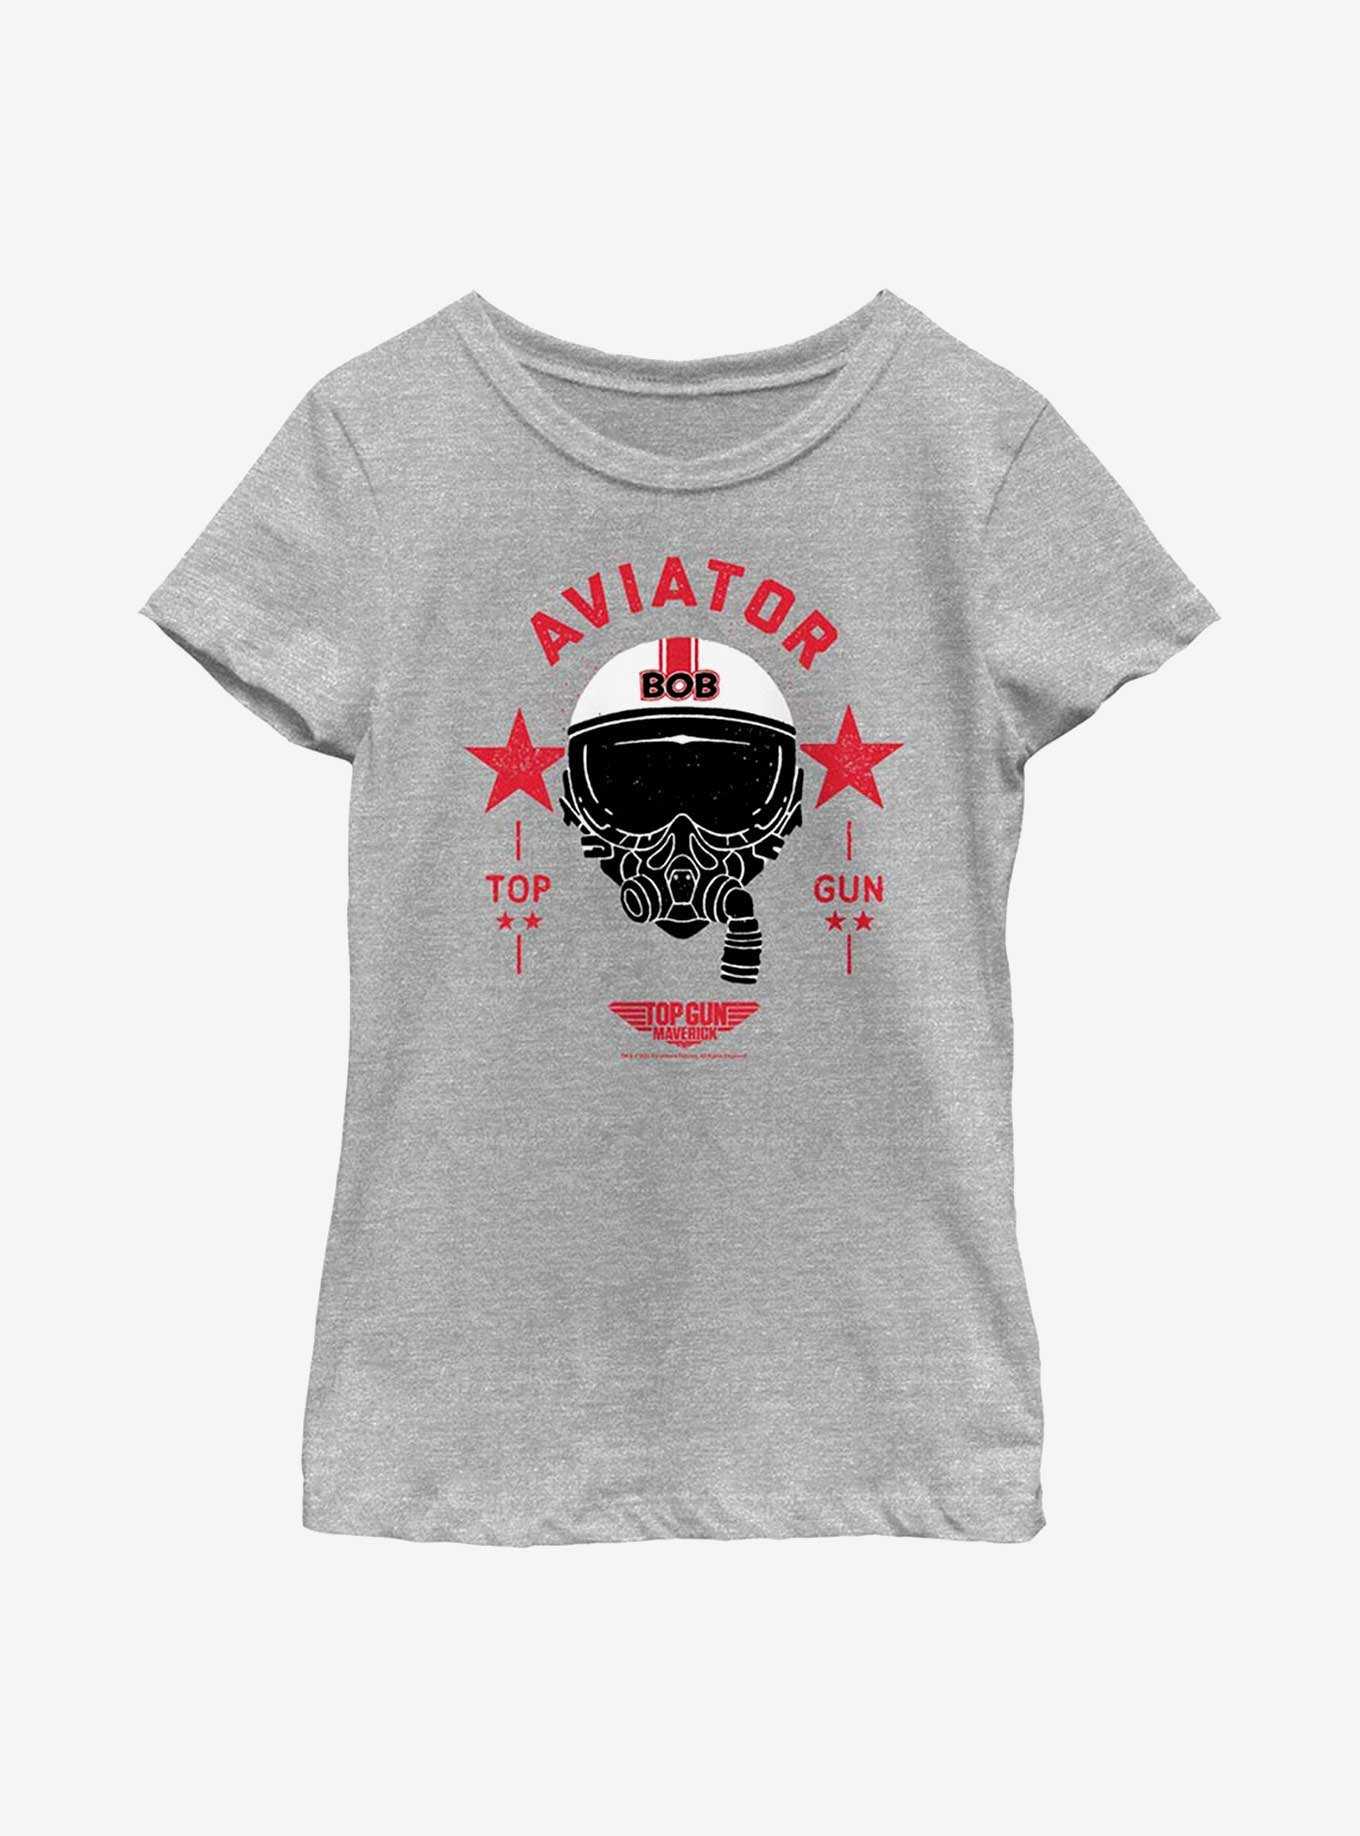 Top Gun: Maverick Bob Aviator Youth Girls T-Shirt, , hi-res